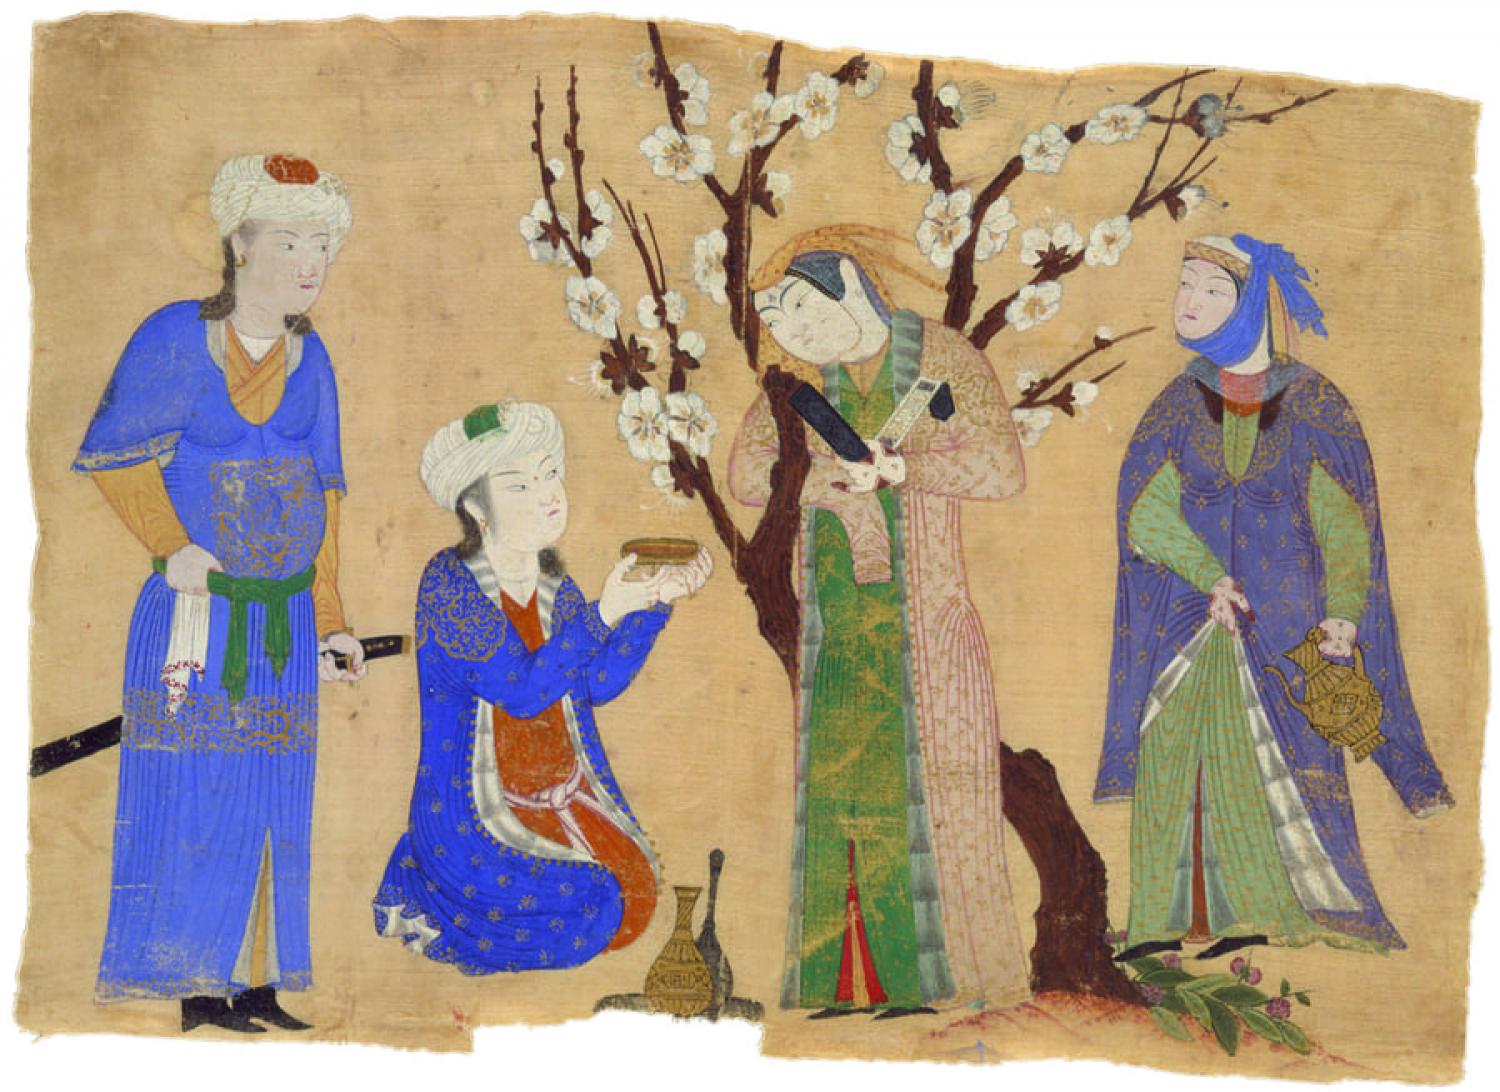 Offerta di bevande in un giardino, miniatura iraniana del XV secolo. New York, Metropolitan Museum of Art.